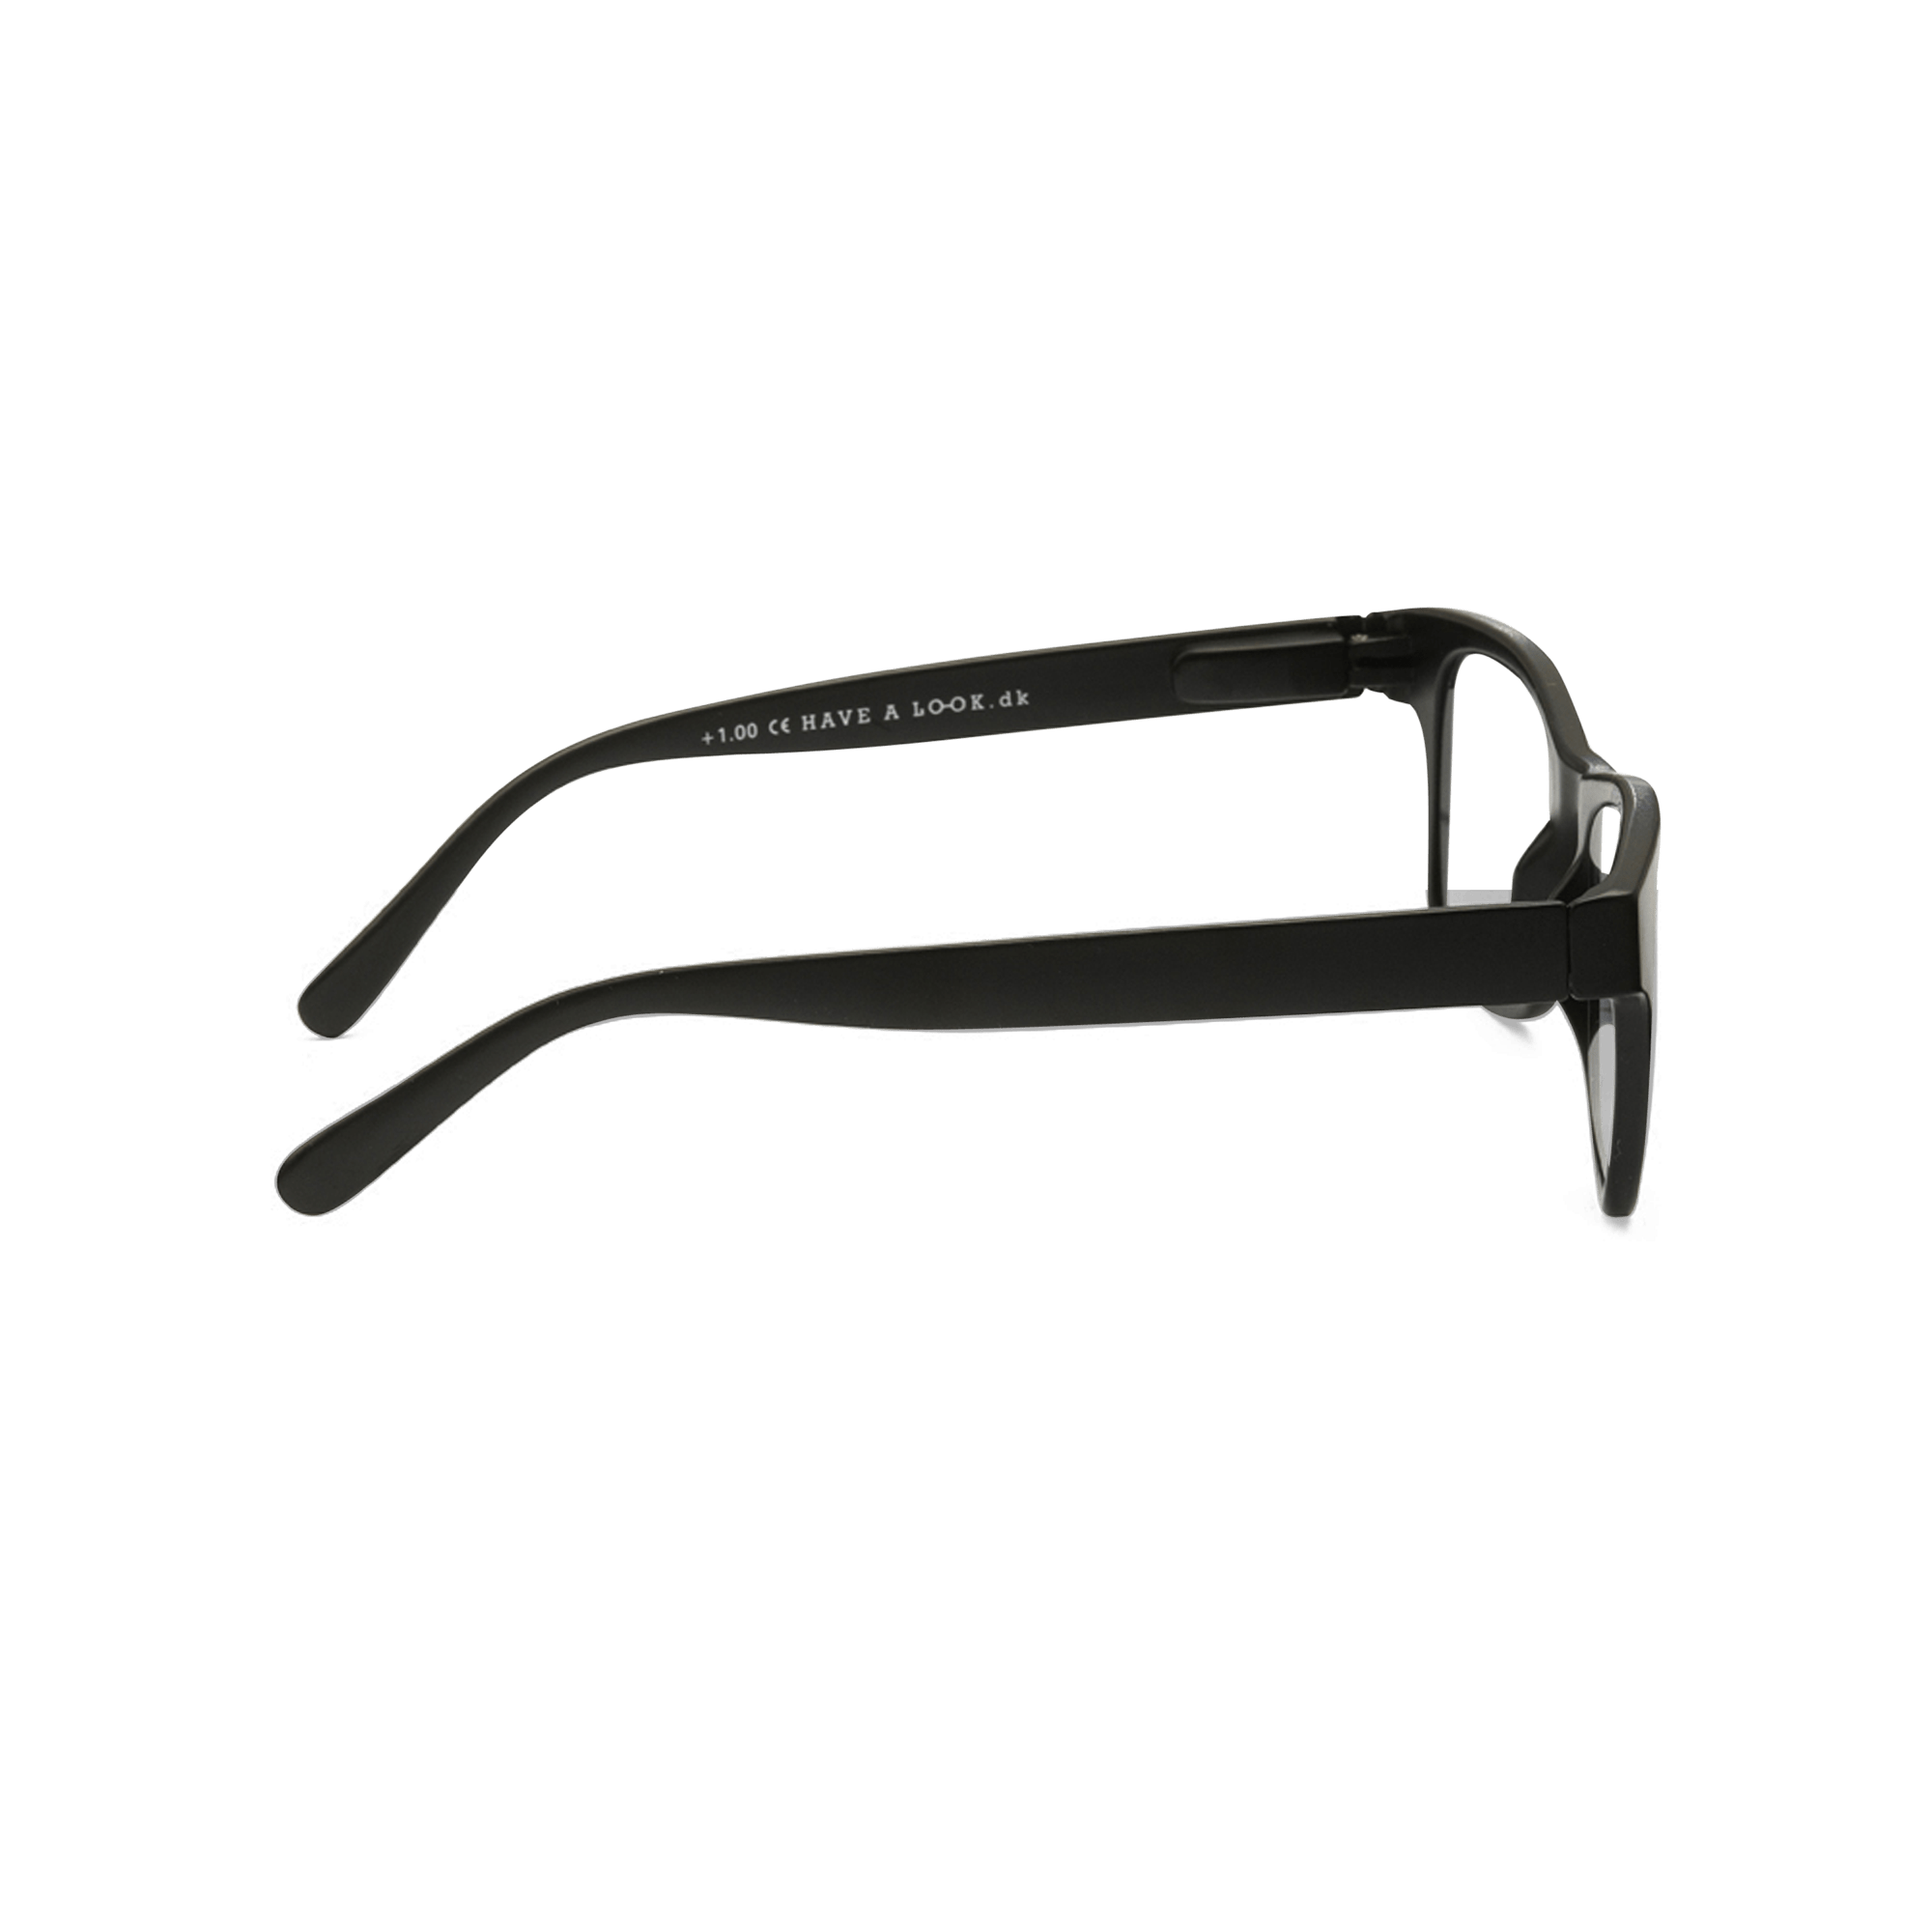 Sonnenfernbrillen Type B - black